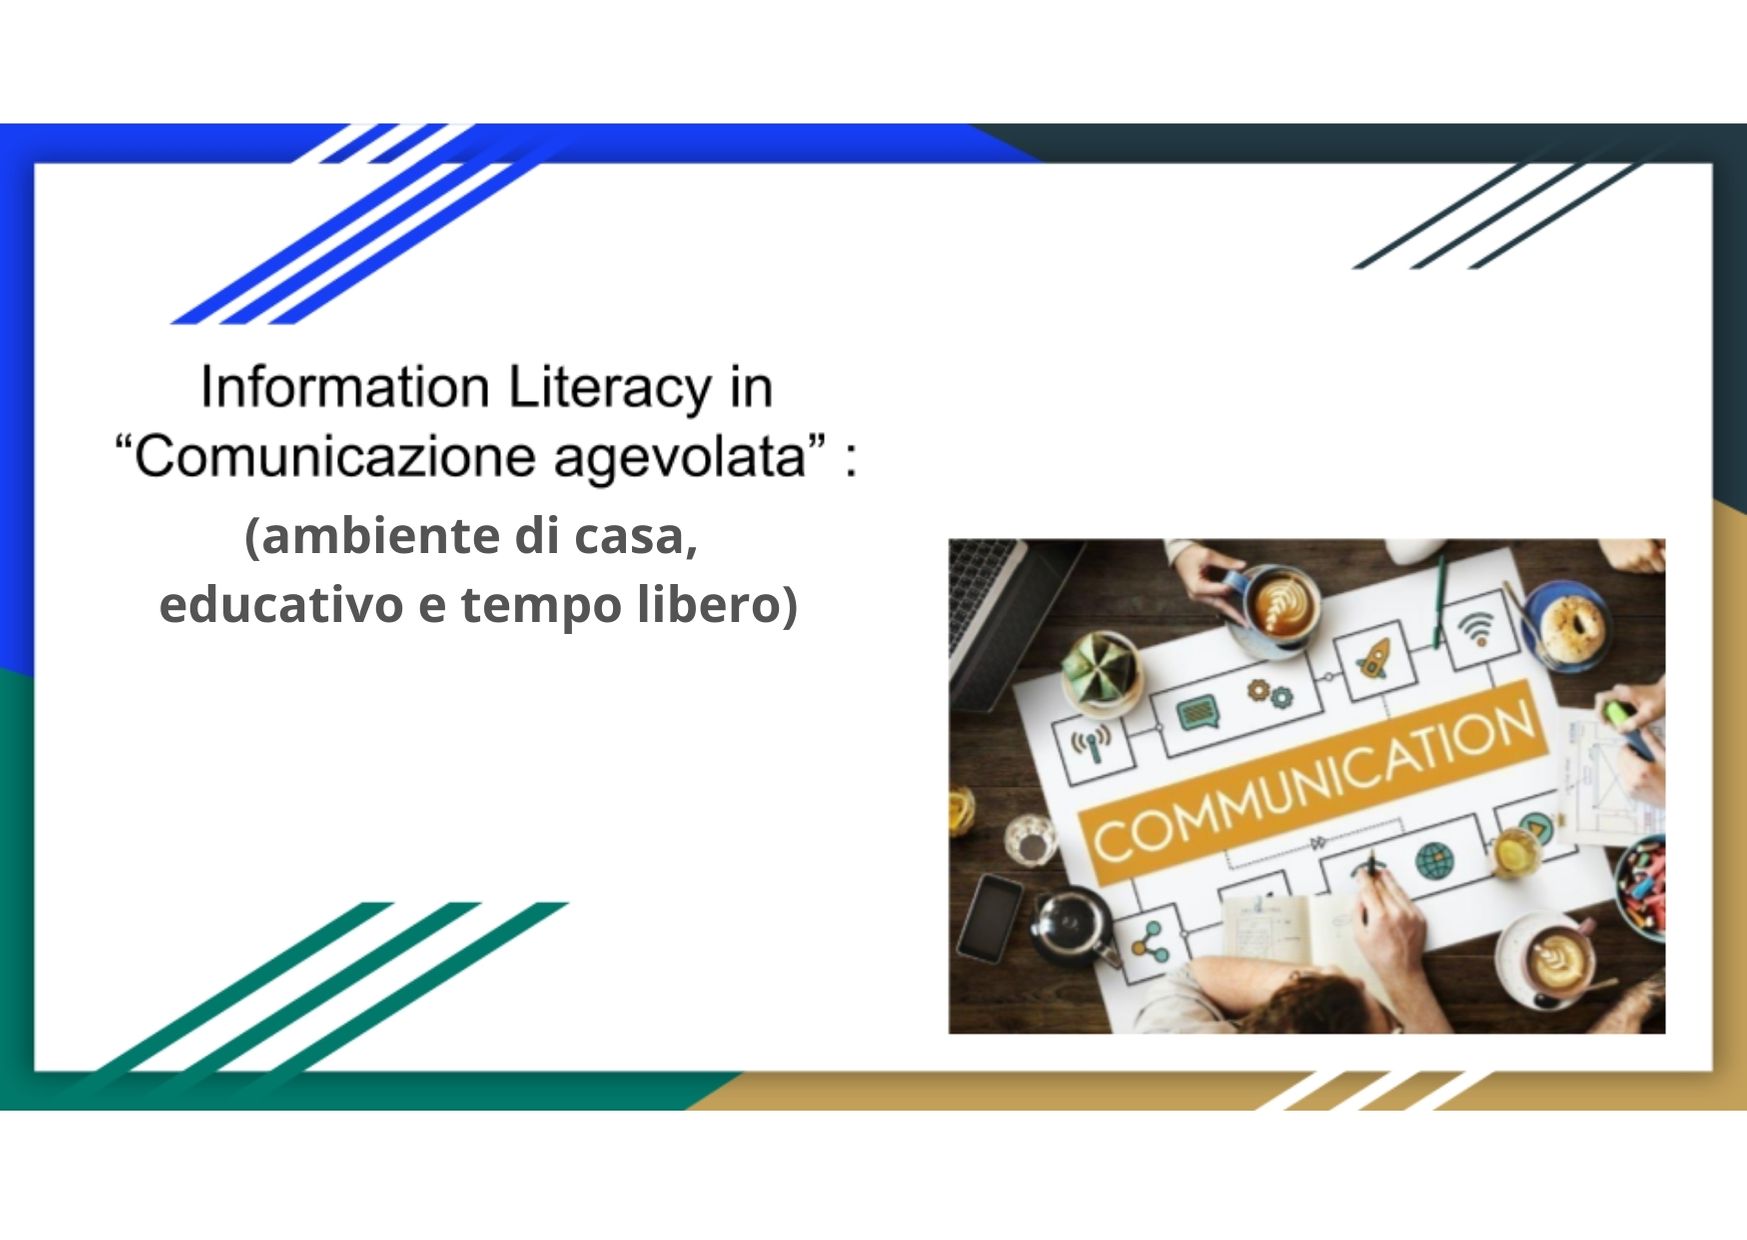 Information Literacy in “COMUNICAZIONE AGEVOLATA” (ambiente di casa, educativo e tempo libero) - ON DEMAND